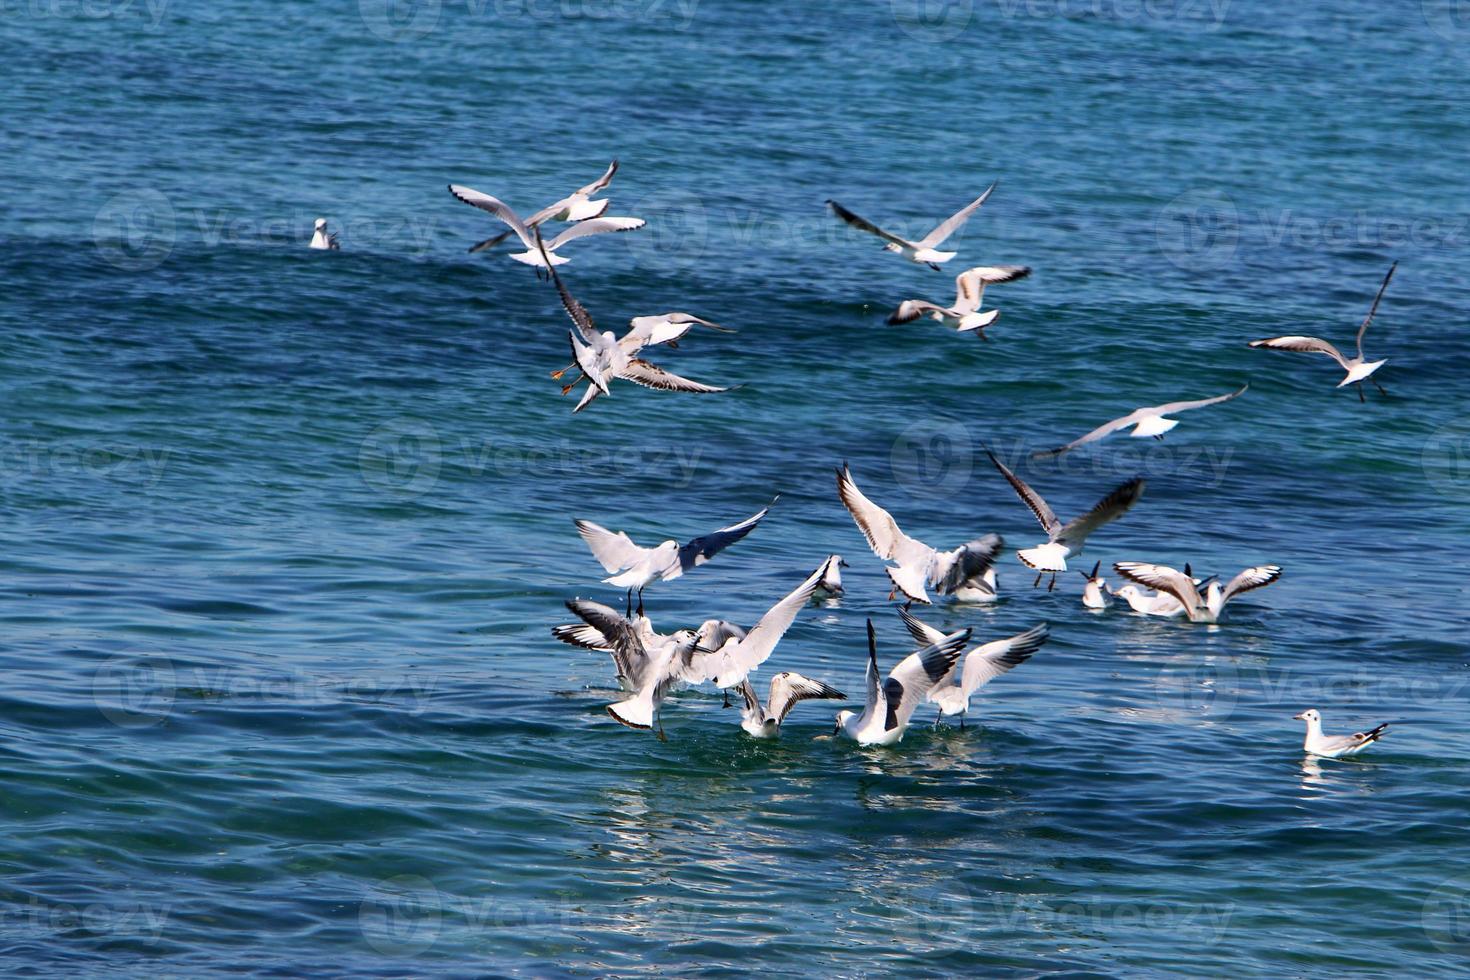 gaivotas no céu sobre o mar. foto